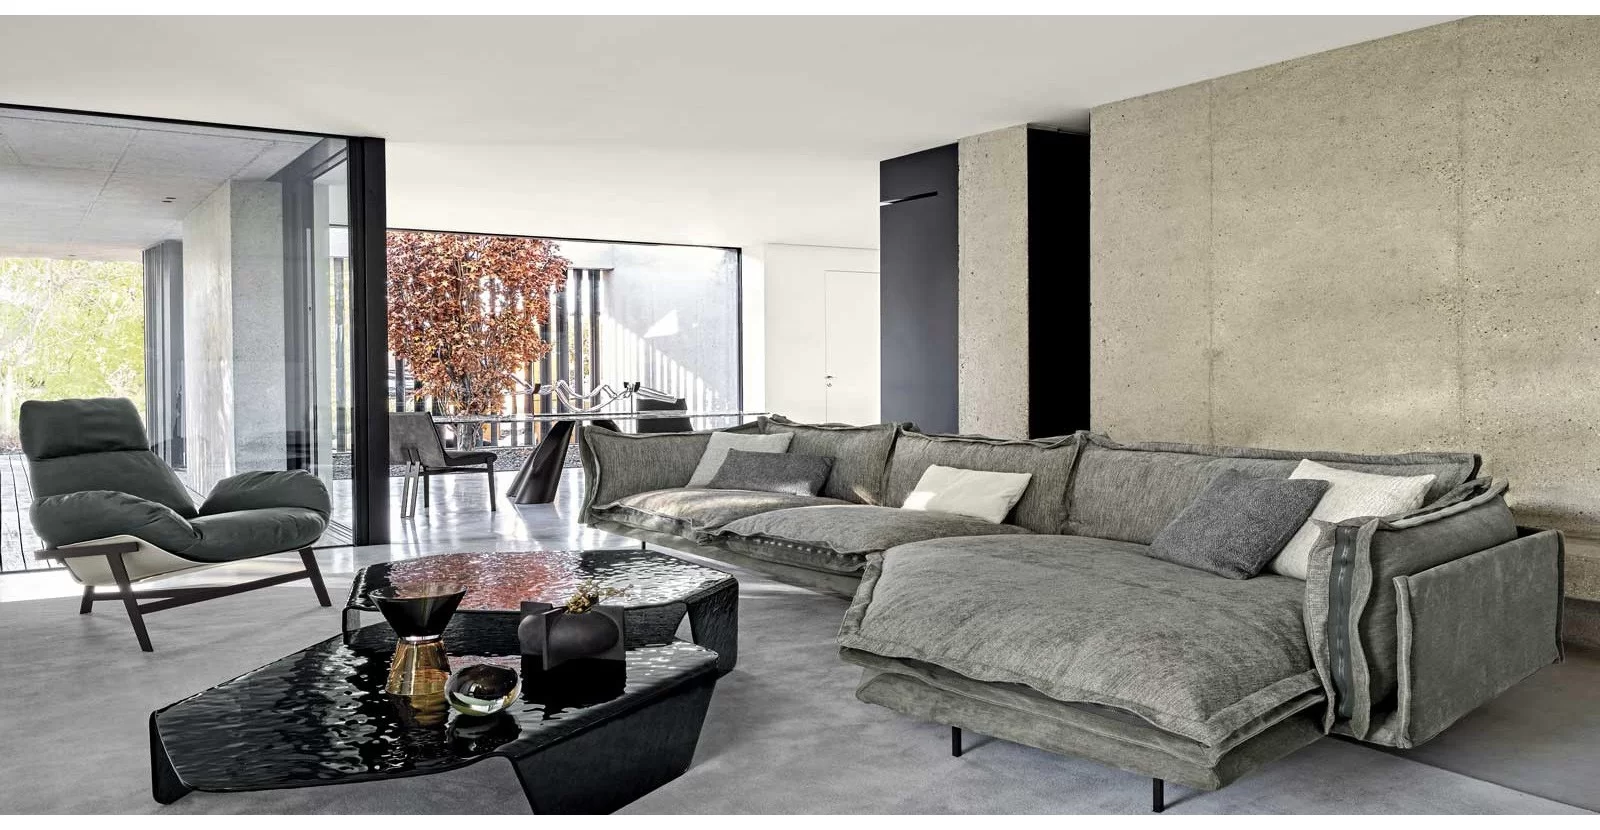 Arketipo Firenze Furniture: Alta calidad de materiales y diseño único